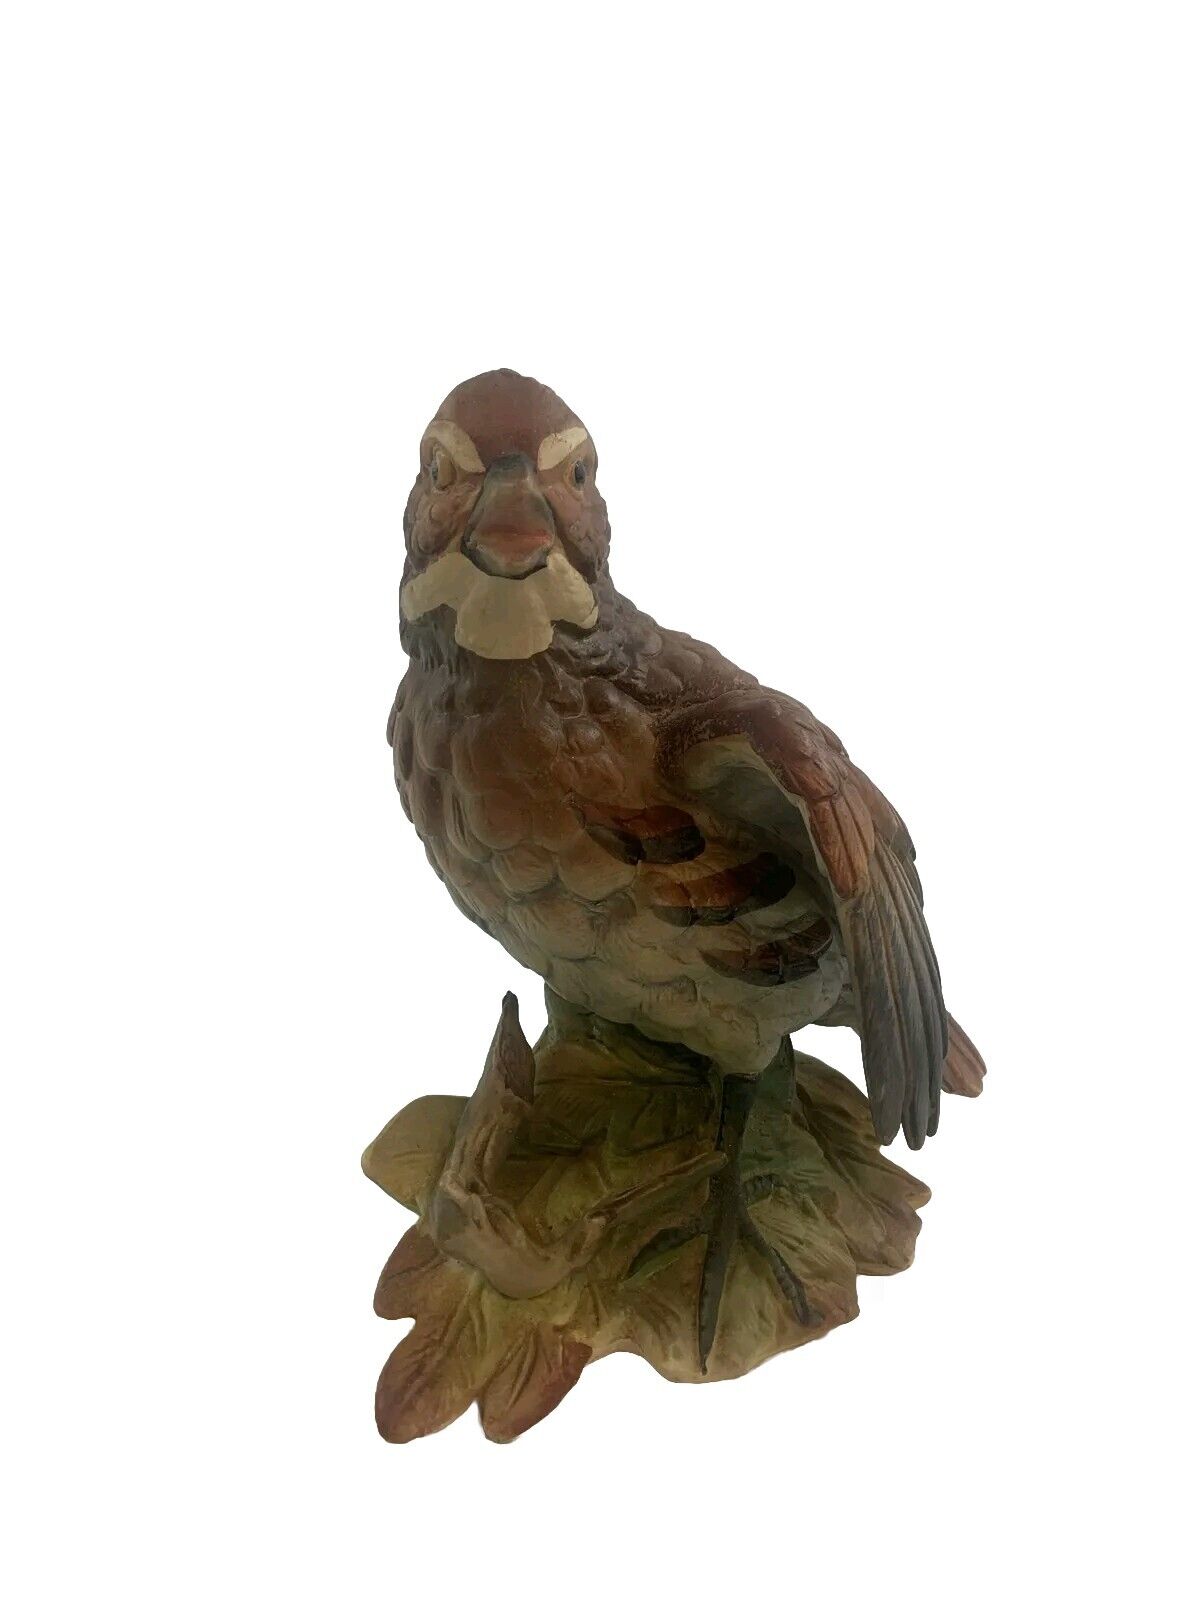 Antique Enesco Imports Bird Ceramic Figurine Made in Japan